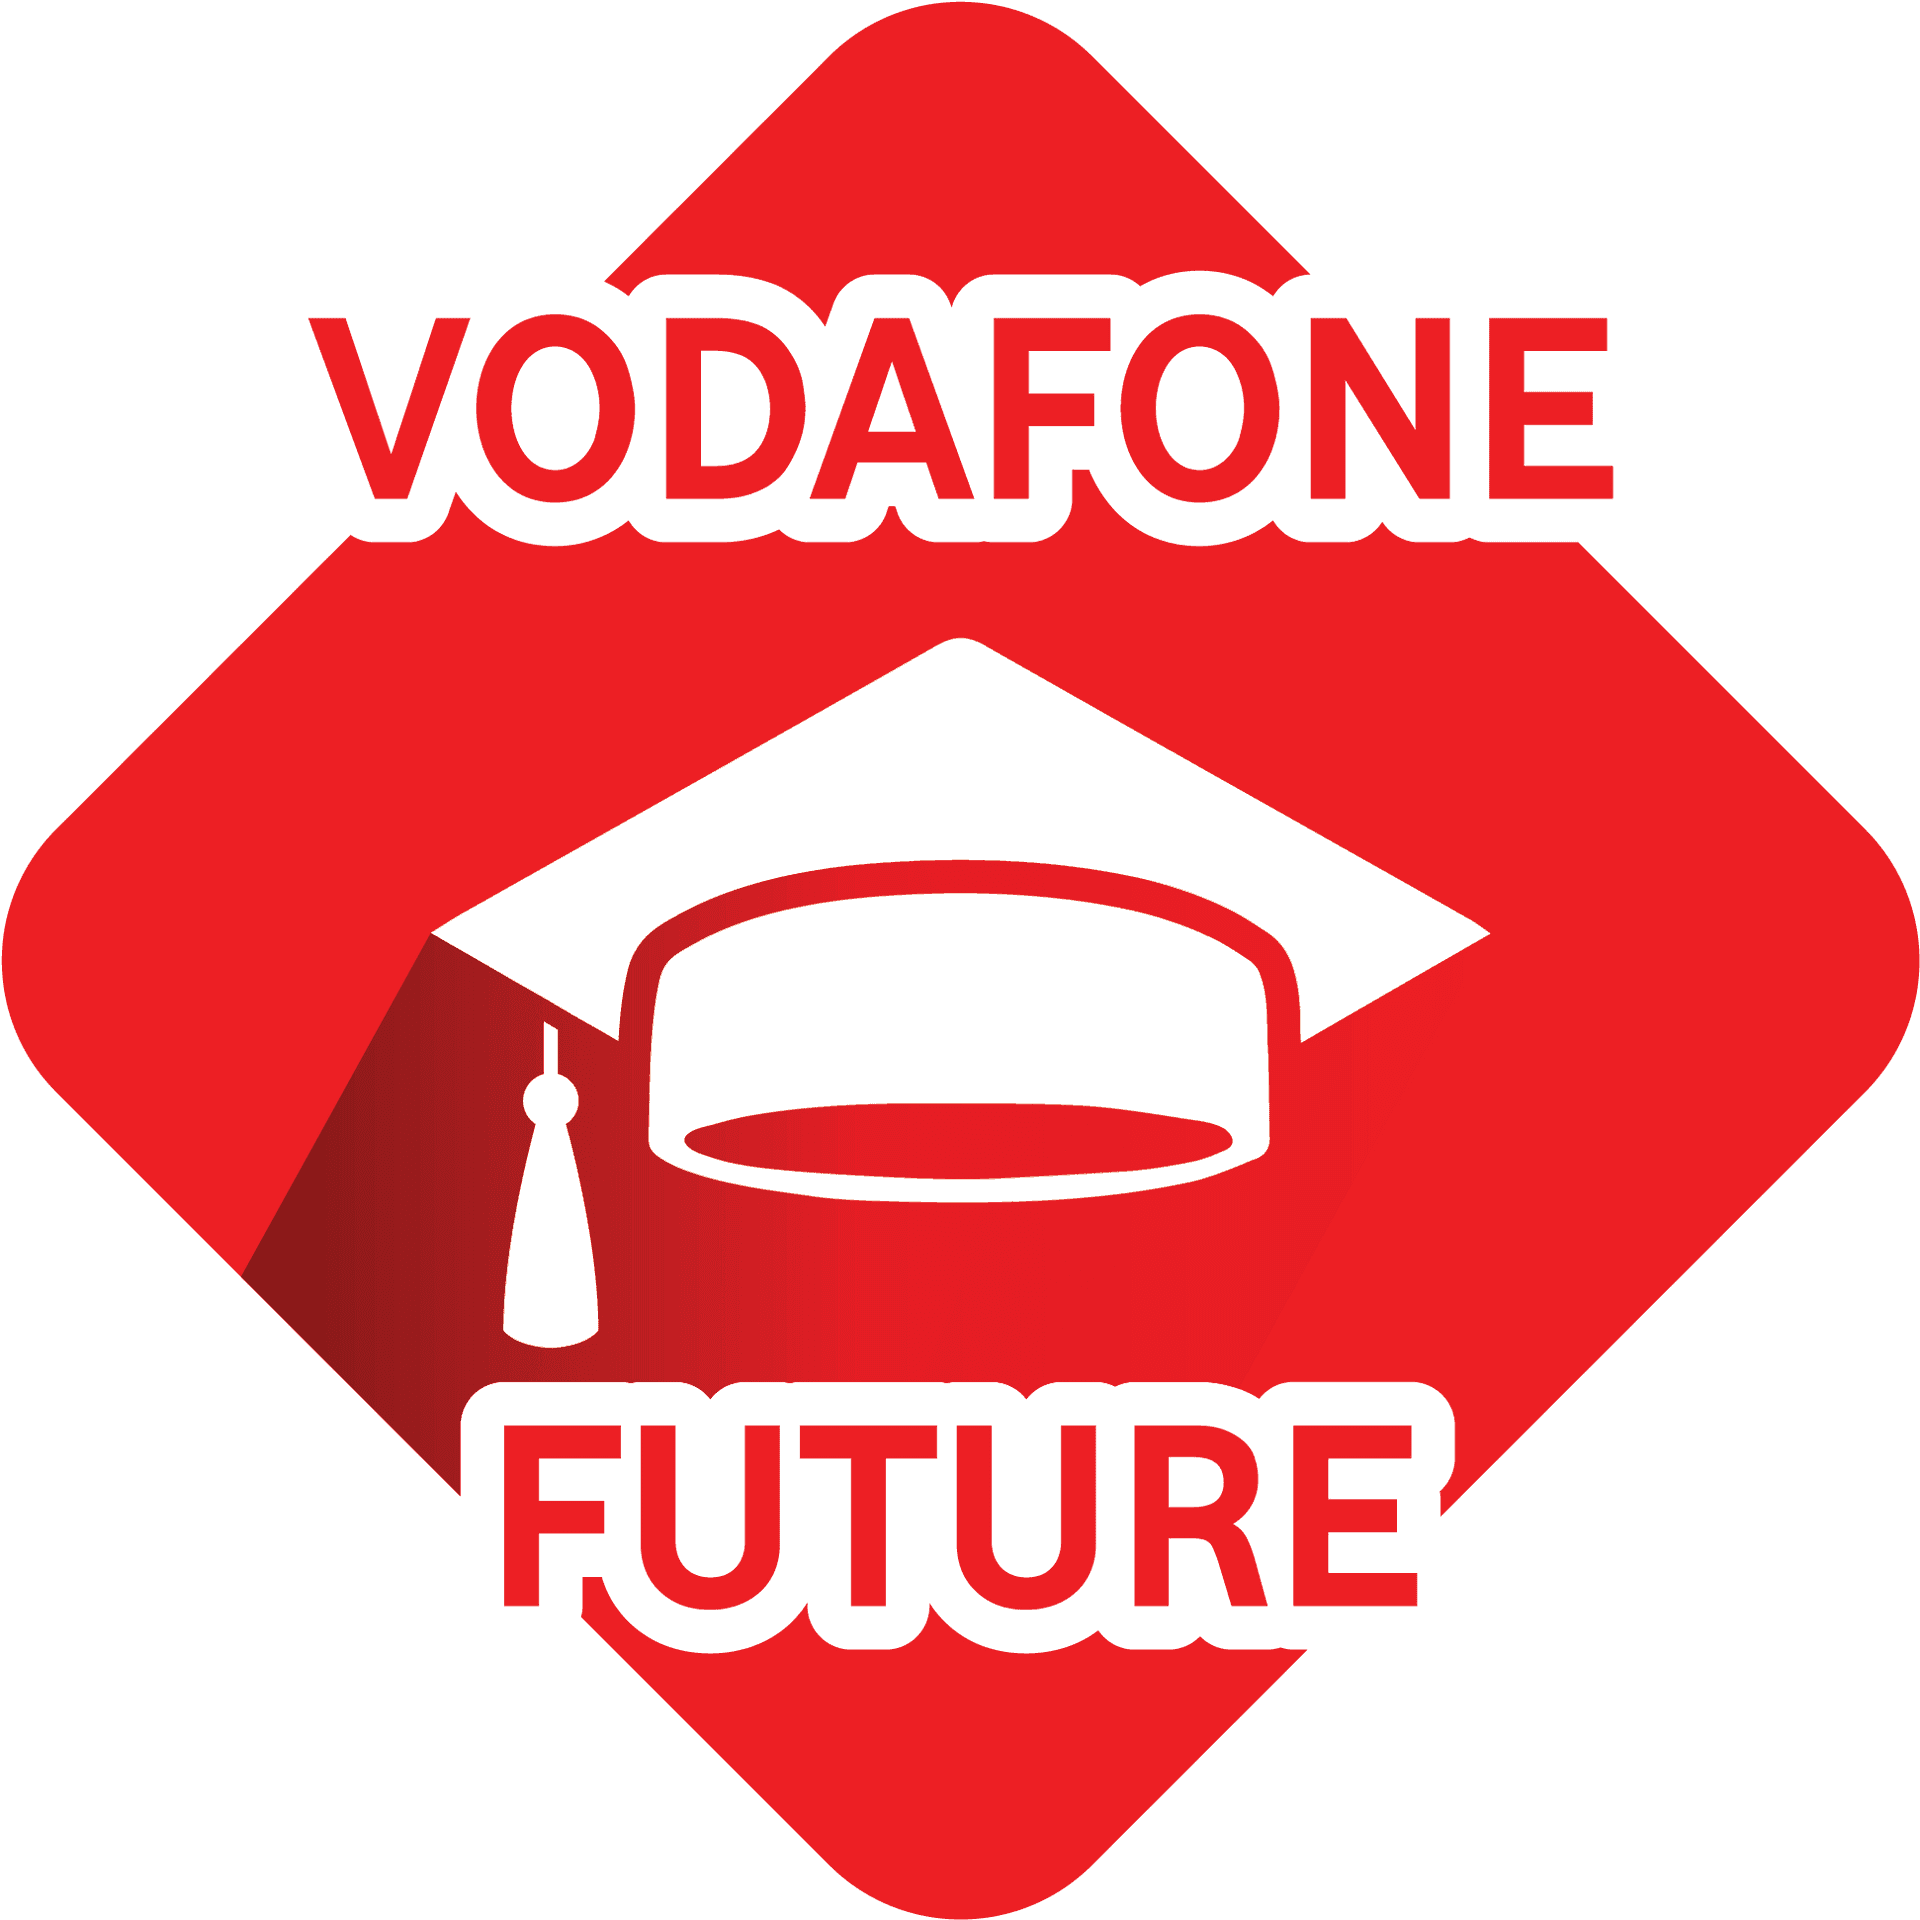 Vodafone Future Graduation Cap Logo PNG